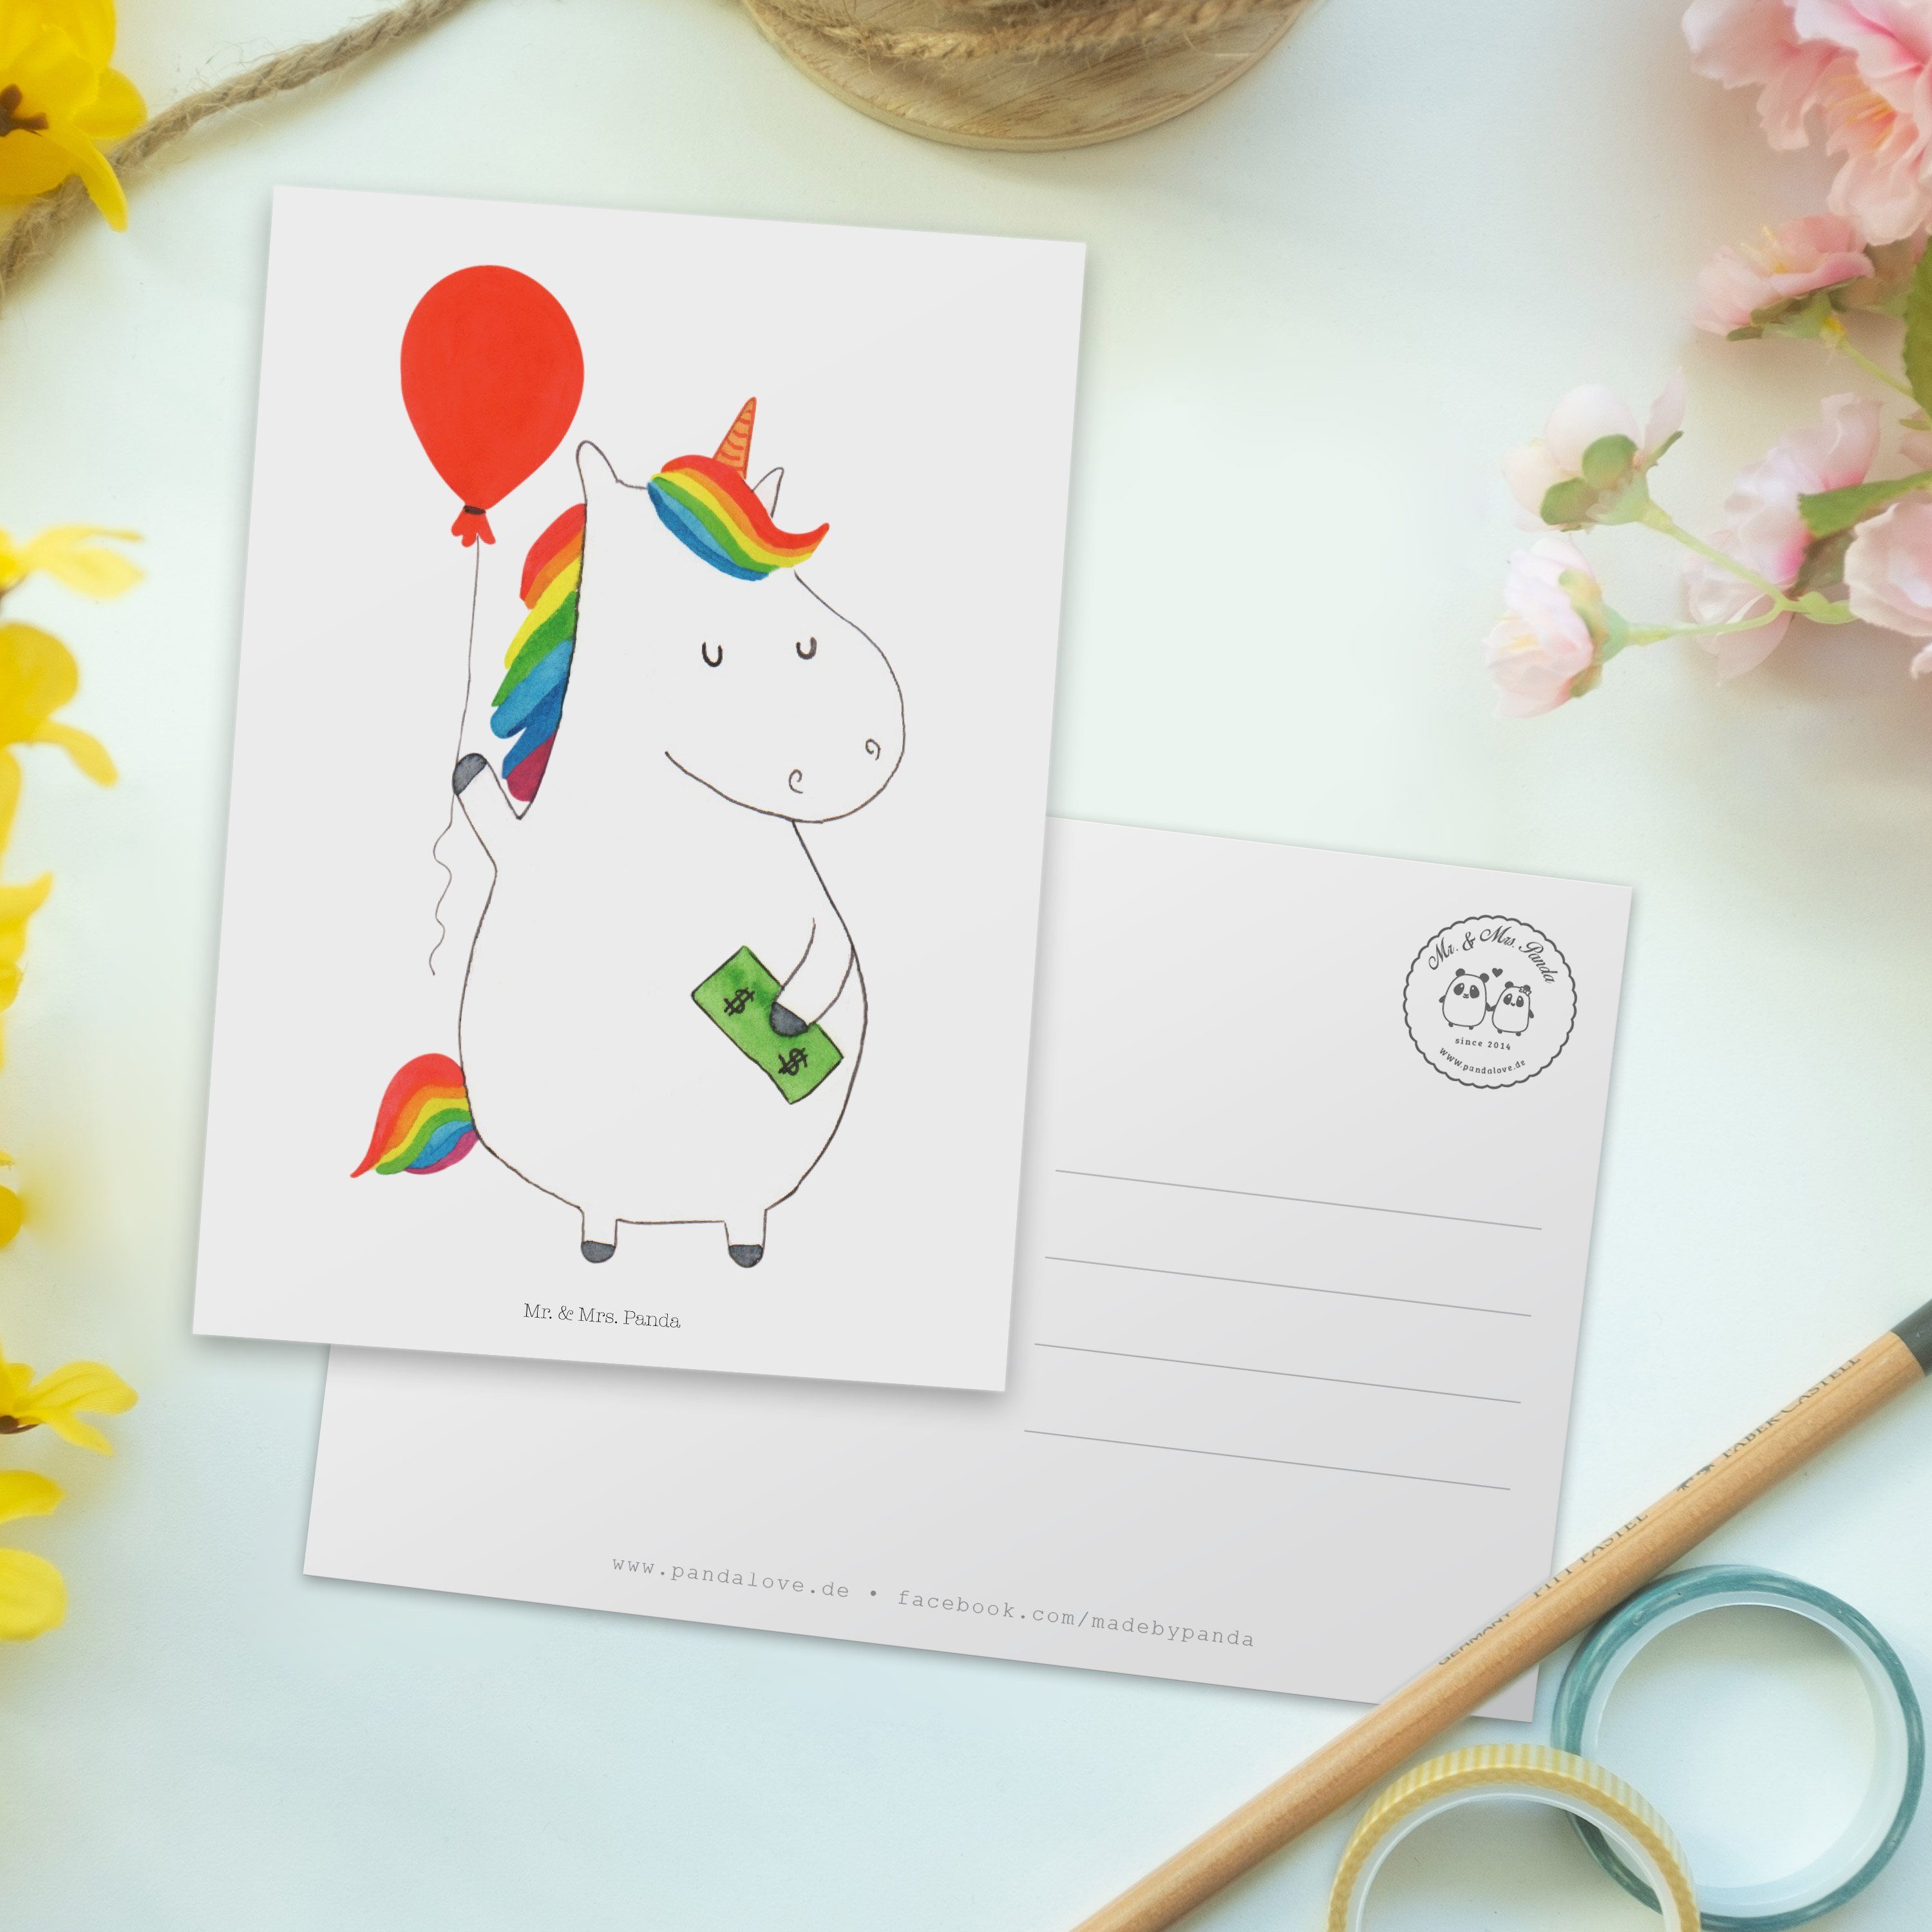 Mr. & Mrs. Panda Postkarte Weiß - - Einhorn Einladung, Geschenk, Unicorn, Grußkarte Luftballon